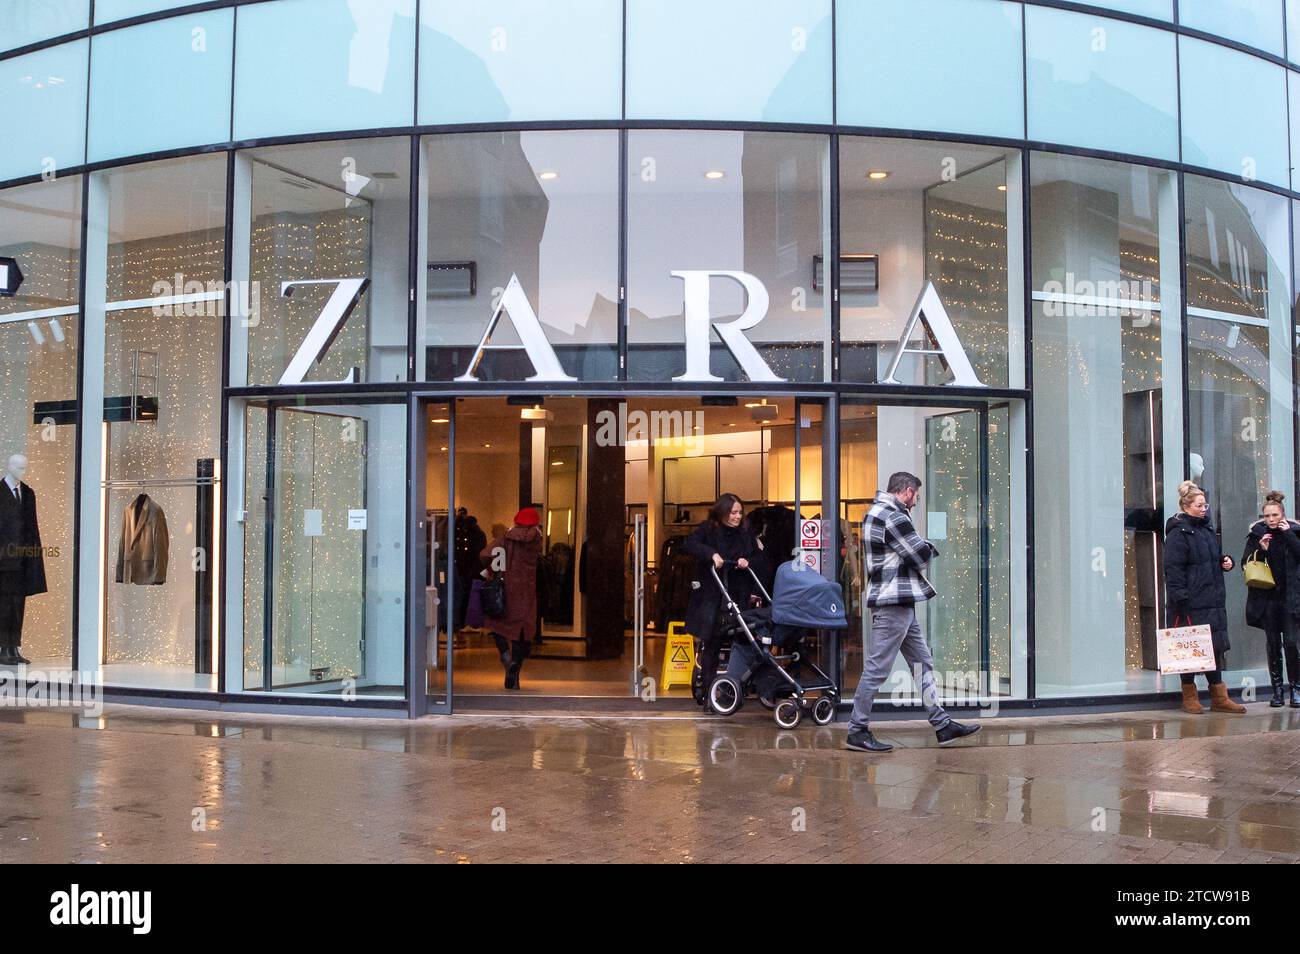 Windsor, Großbritannien. Dezember 2023. Ein Zara-Bekleidungsgeschäft in Windsor, Berkshire. Inditex, die Eigentümerin der Bekleidungskette Zara, meldete eine Abschwächung des Umsatzwachstums vor Weihnachten. Quelle: Maureen McLean/Alamy Live News Stockfoto